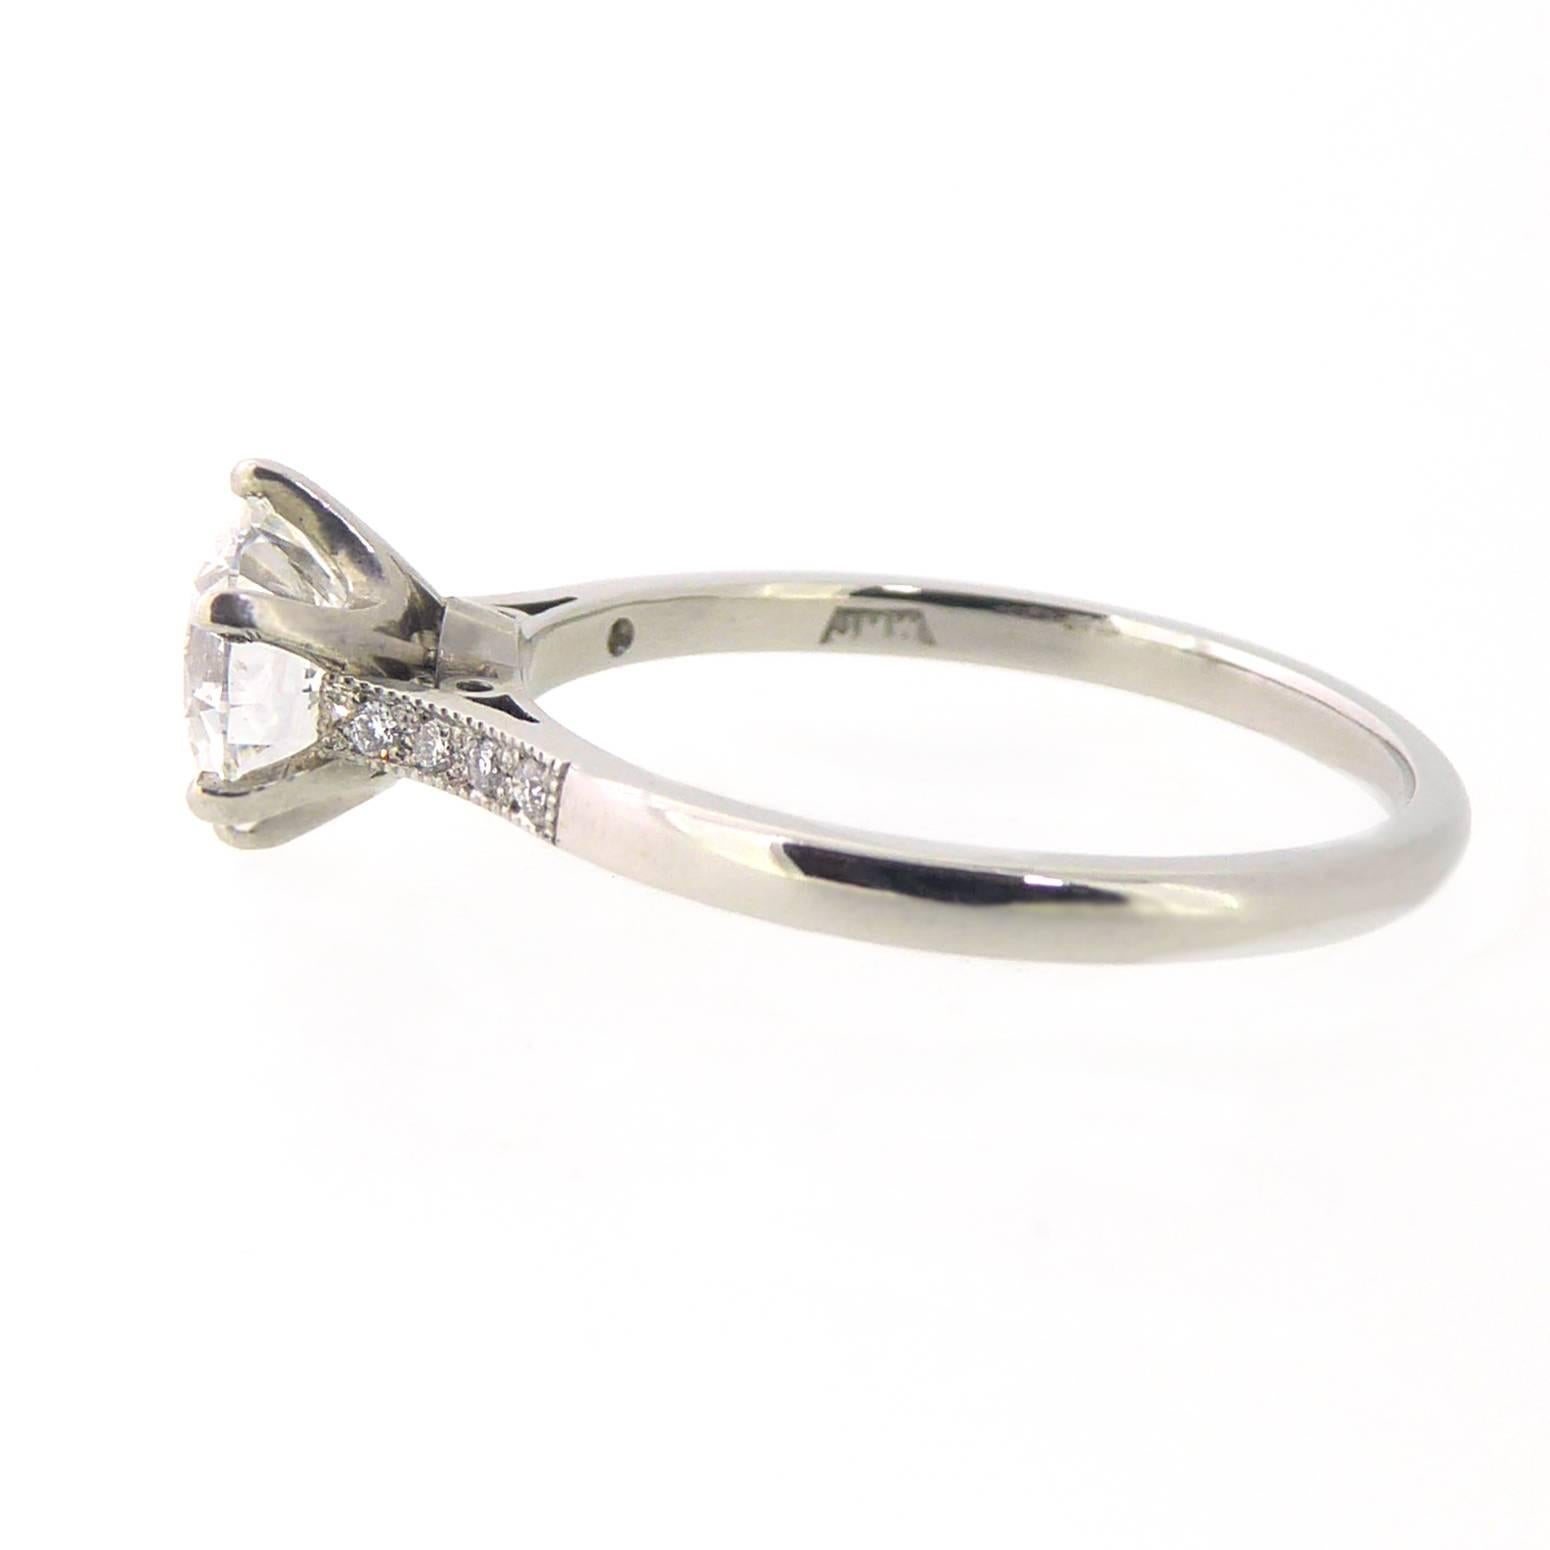 Retro GIA Certified 1.04 Carat Brilliant Cut Diamond Solitaire Ring, Platinum